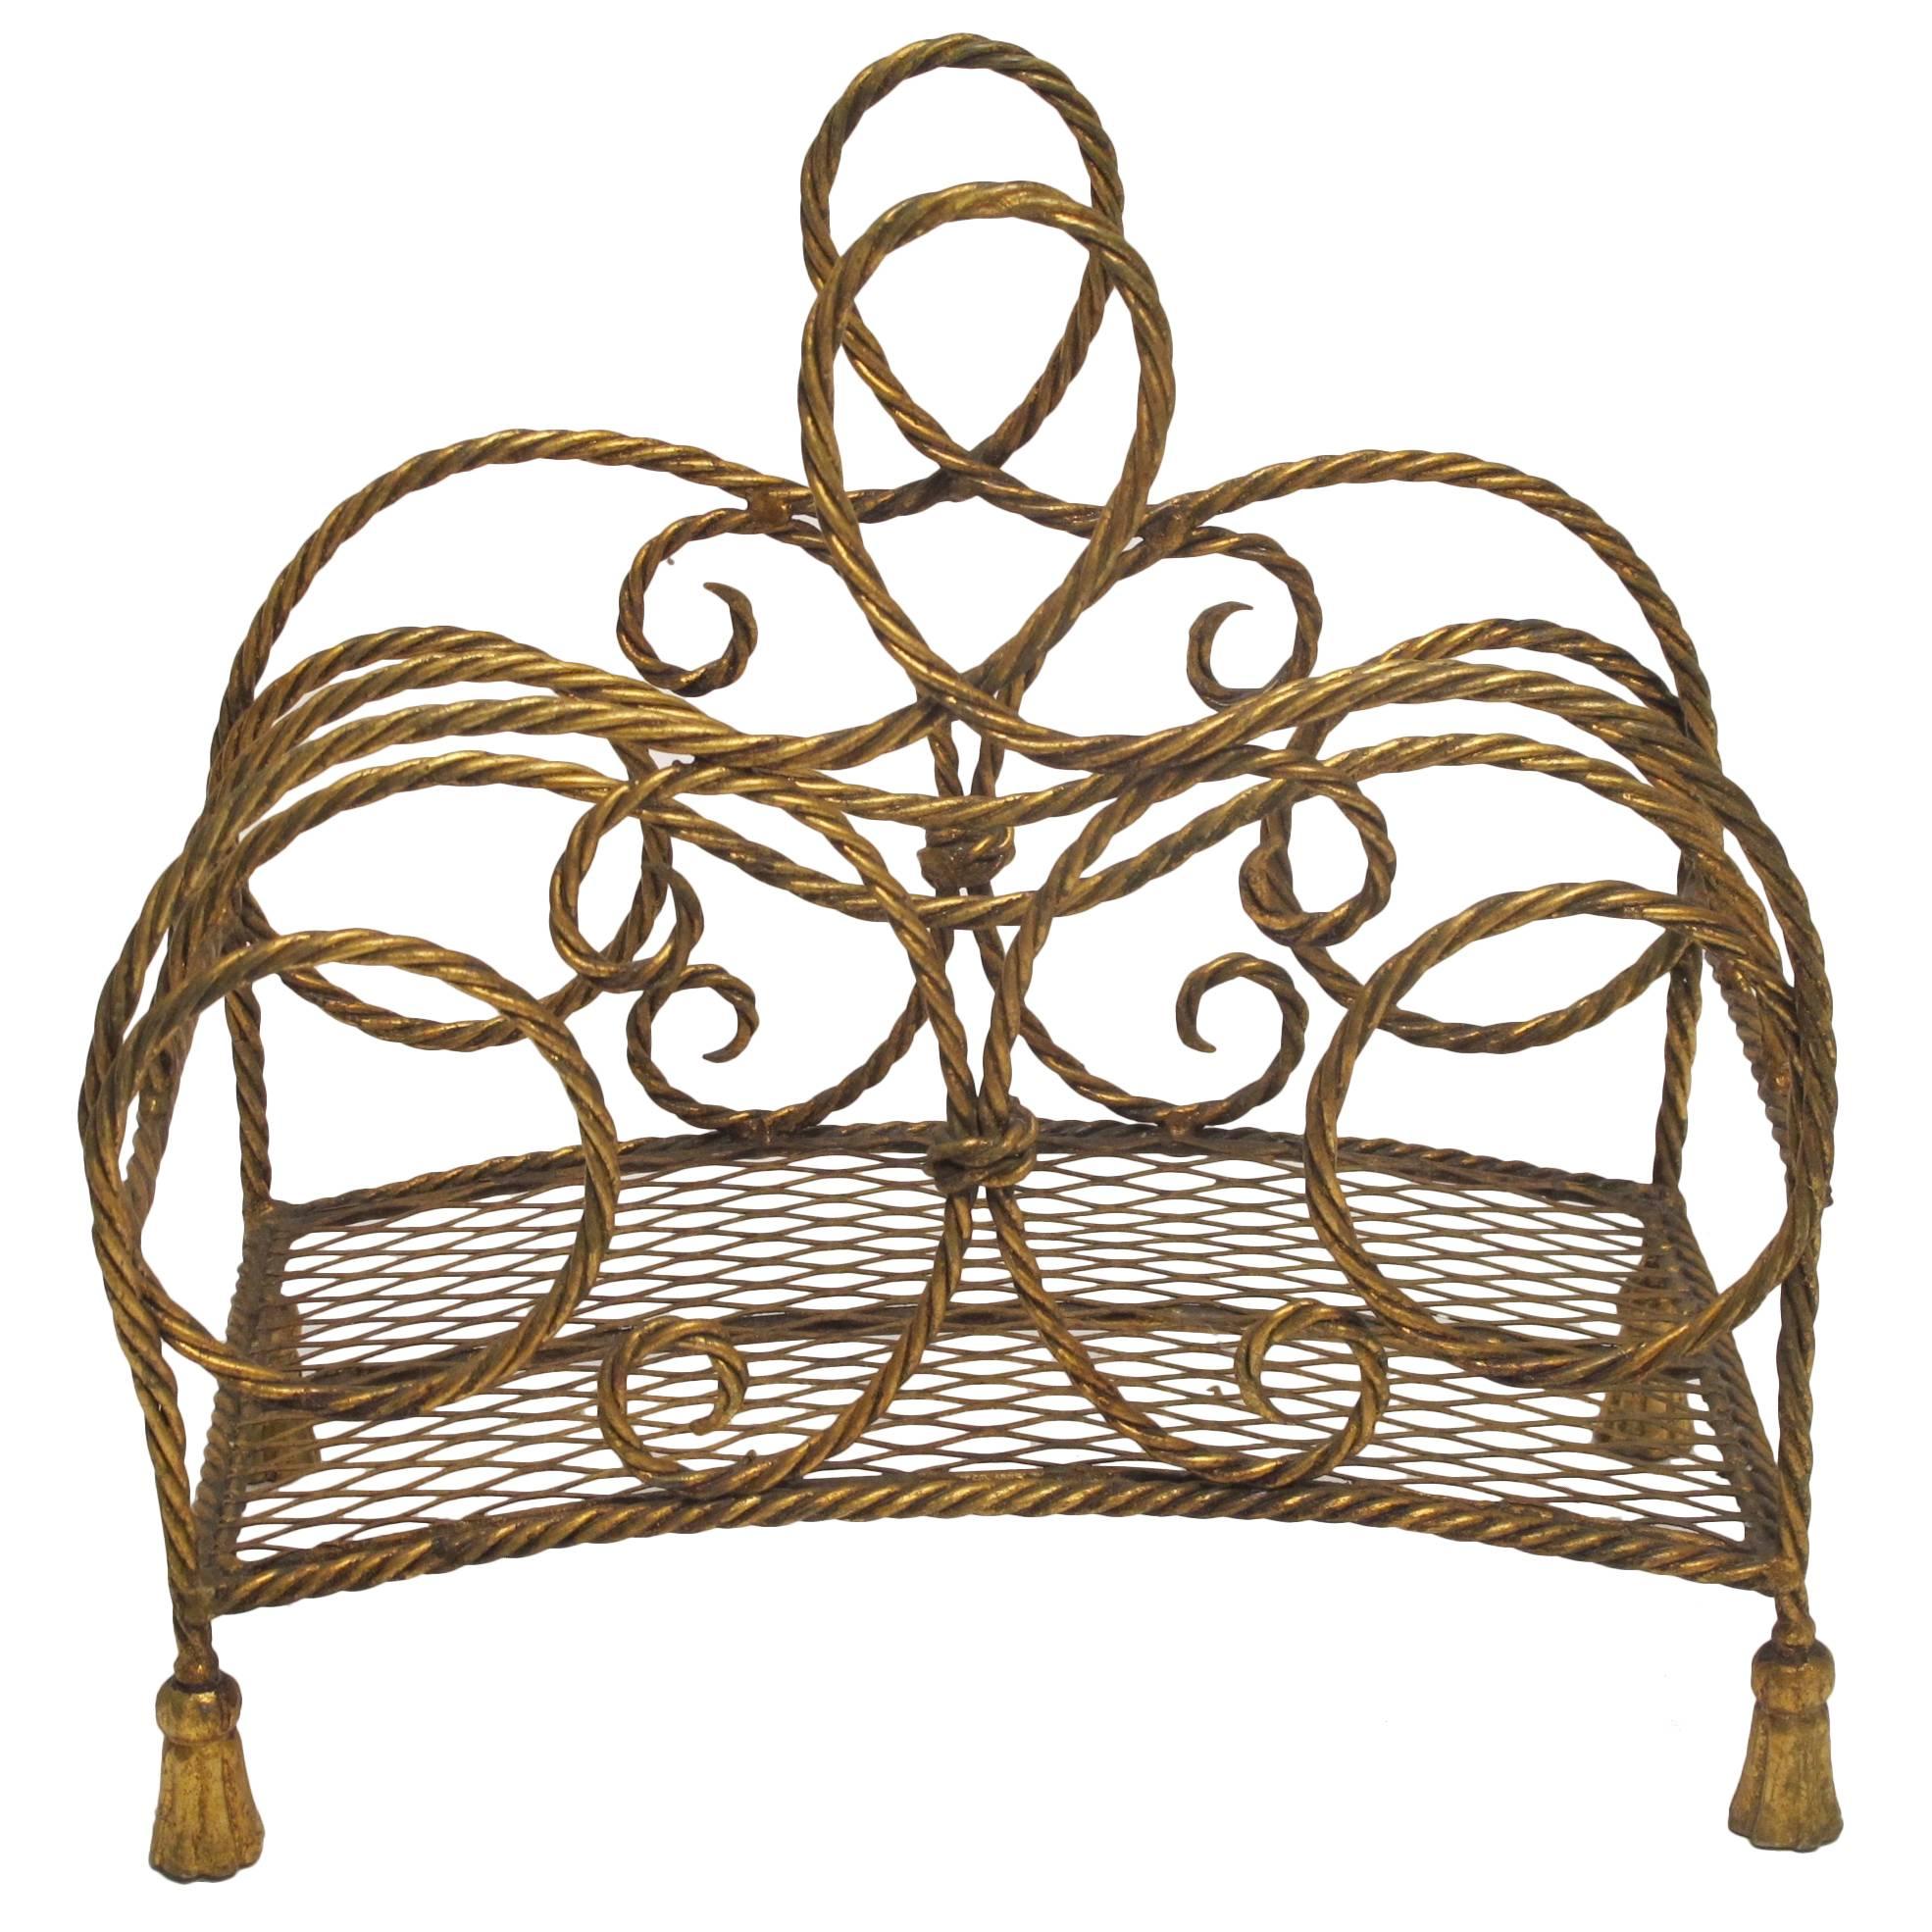 Porte-revues en métal doré torsadé de style italien du milieu du siècle dernier, en forme de corde